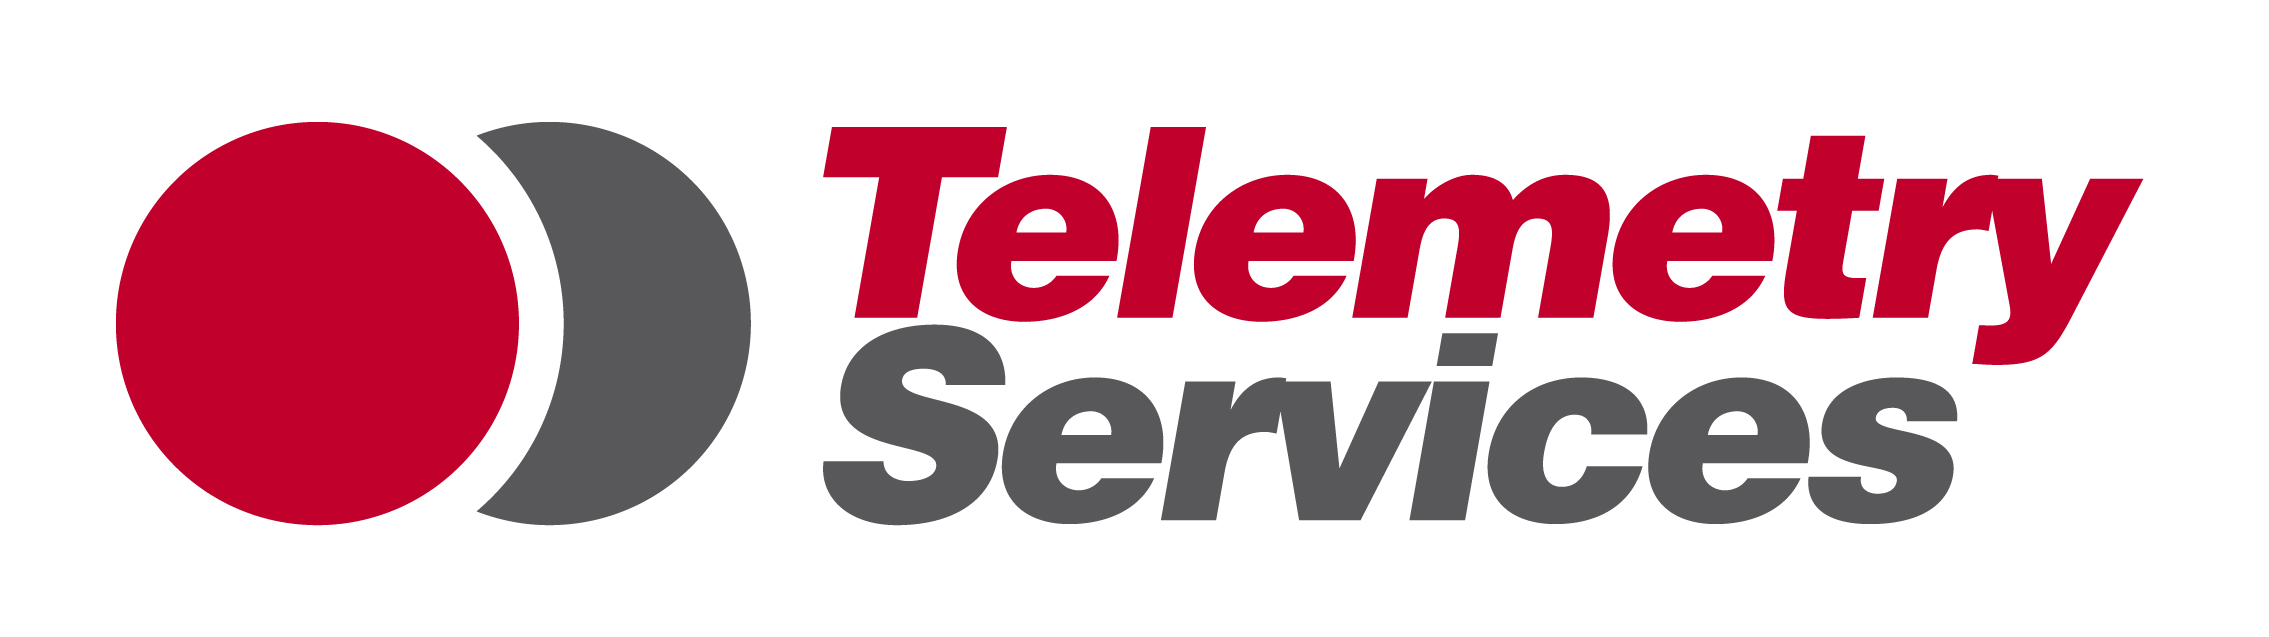 Dial Telecom poskytuje telemetrické služby